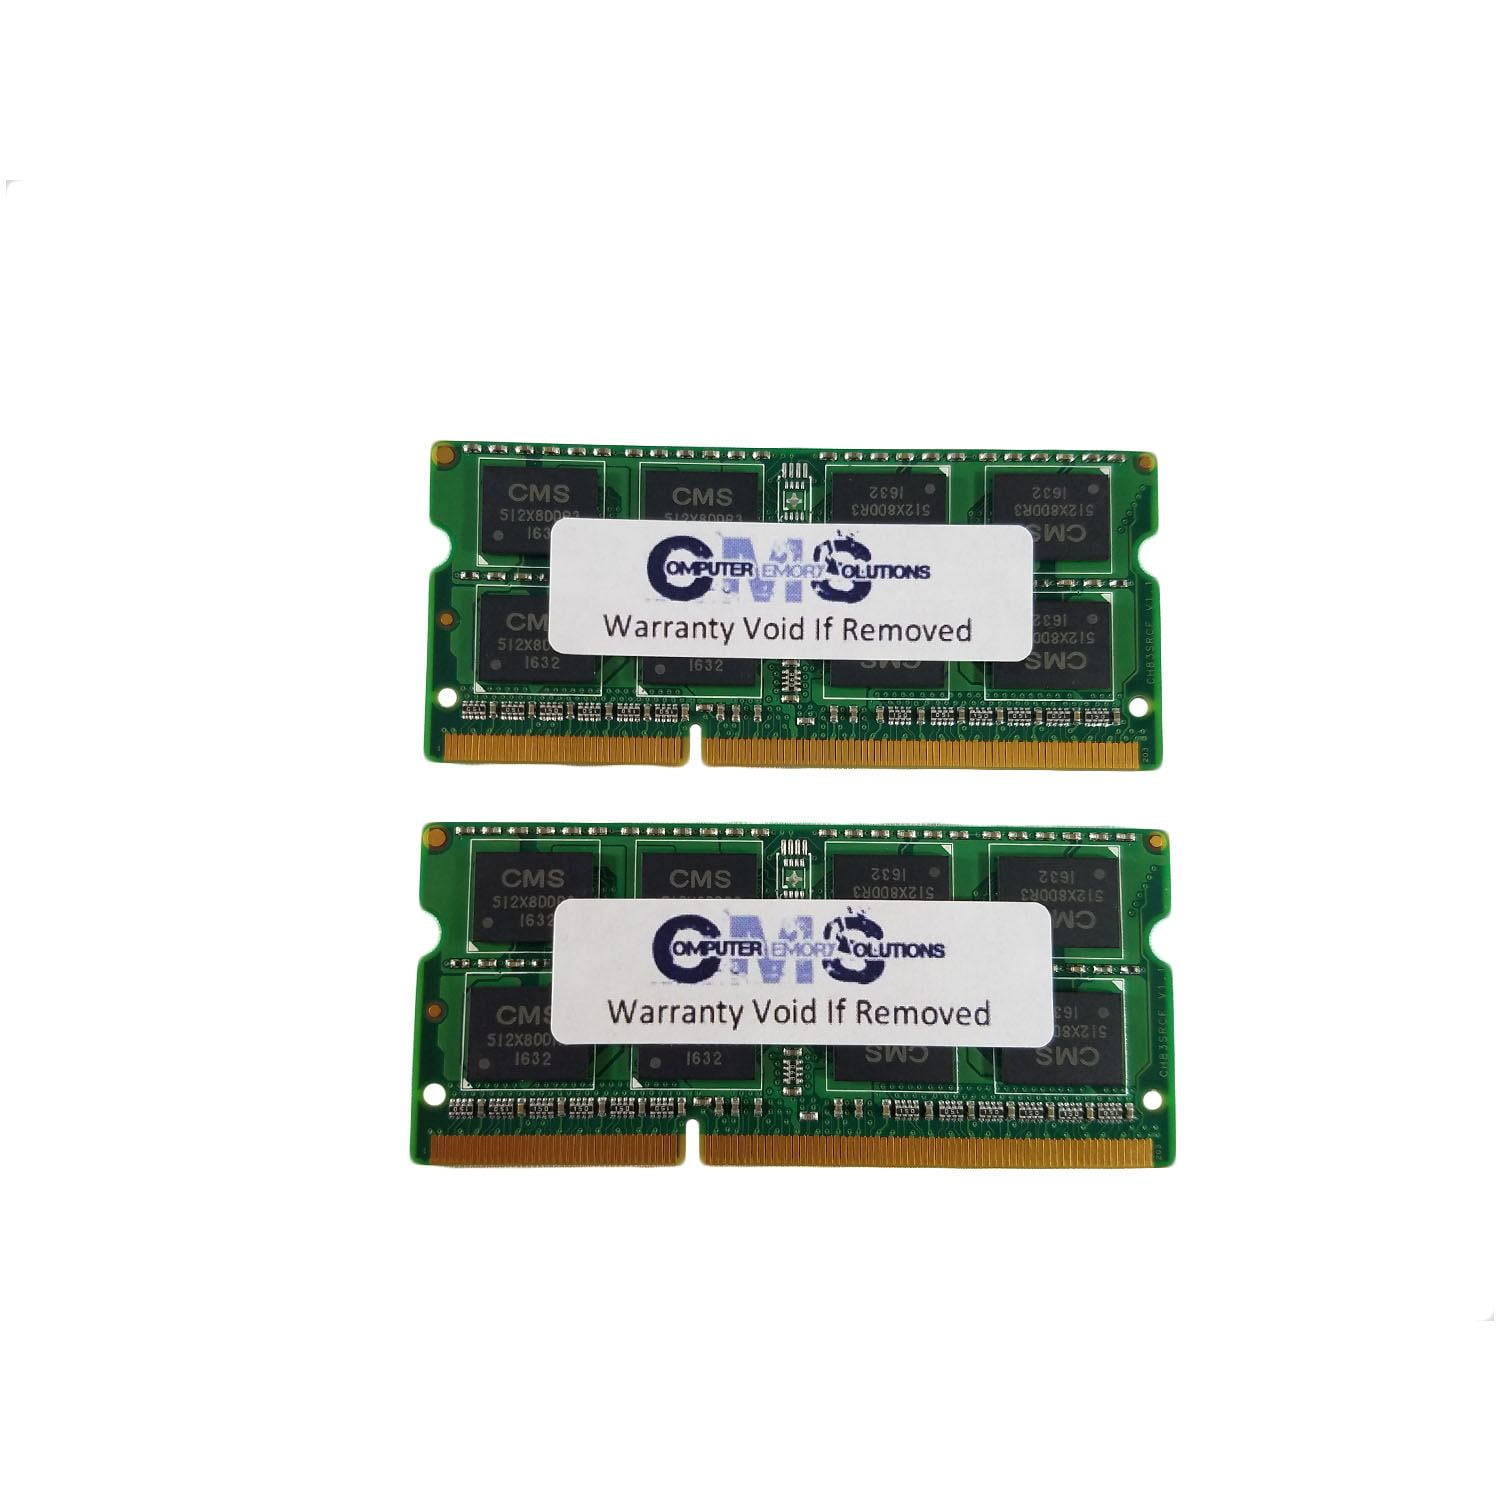 CMS 16GB (2X8GB) DDR3 12800 1600MHz NON ECC SODIMM Memory Ram Compatible  with Fujitsu Lifebook E544 - A7